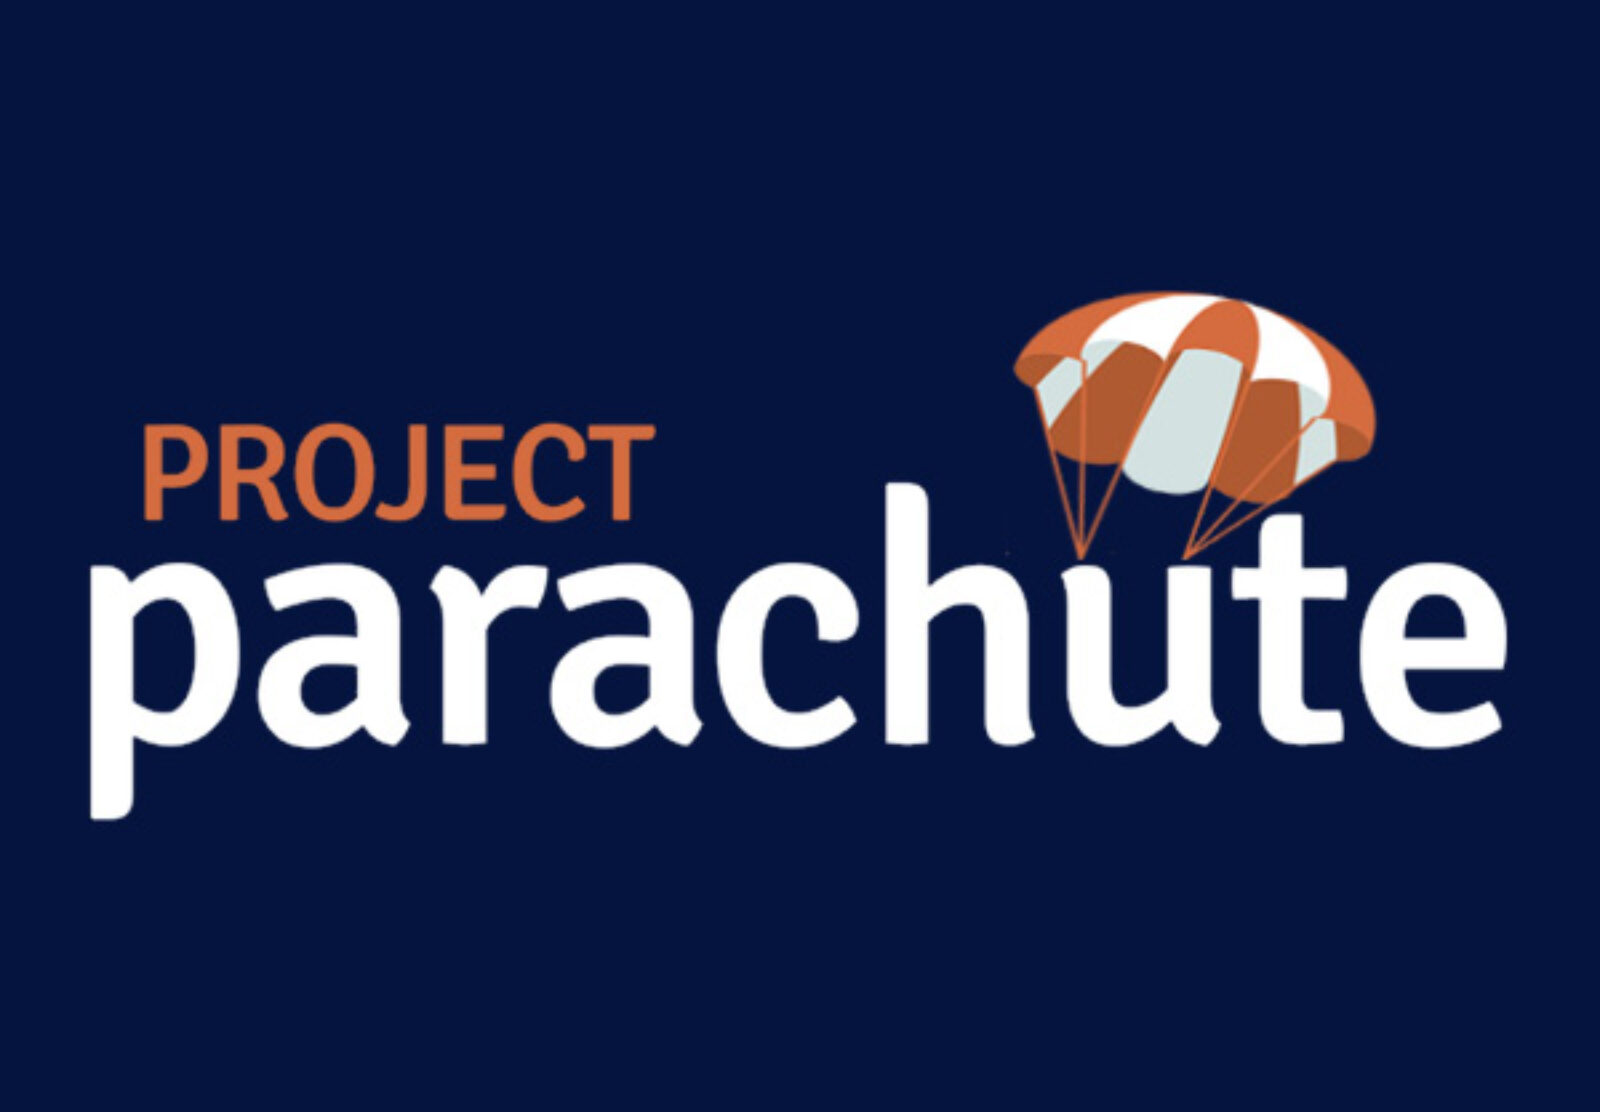 Project Parachute